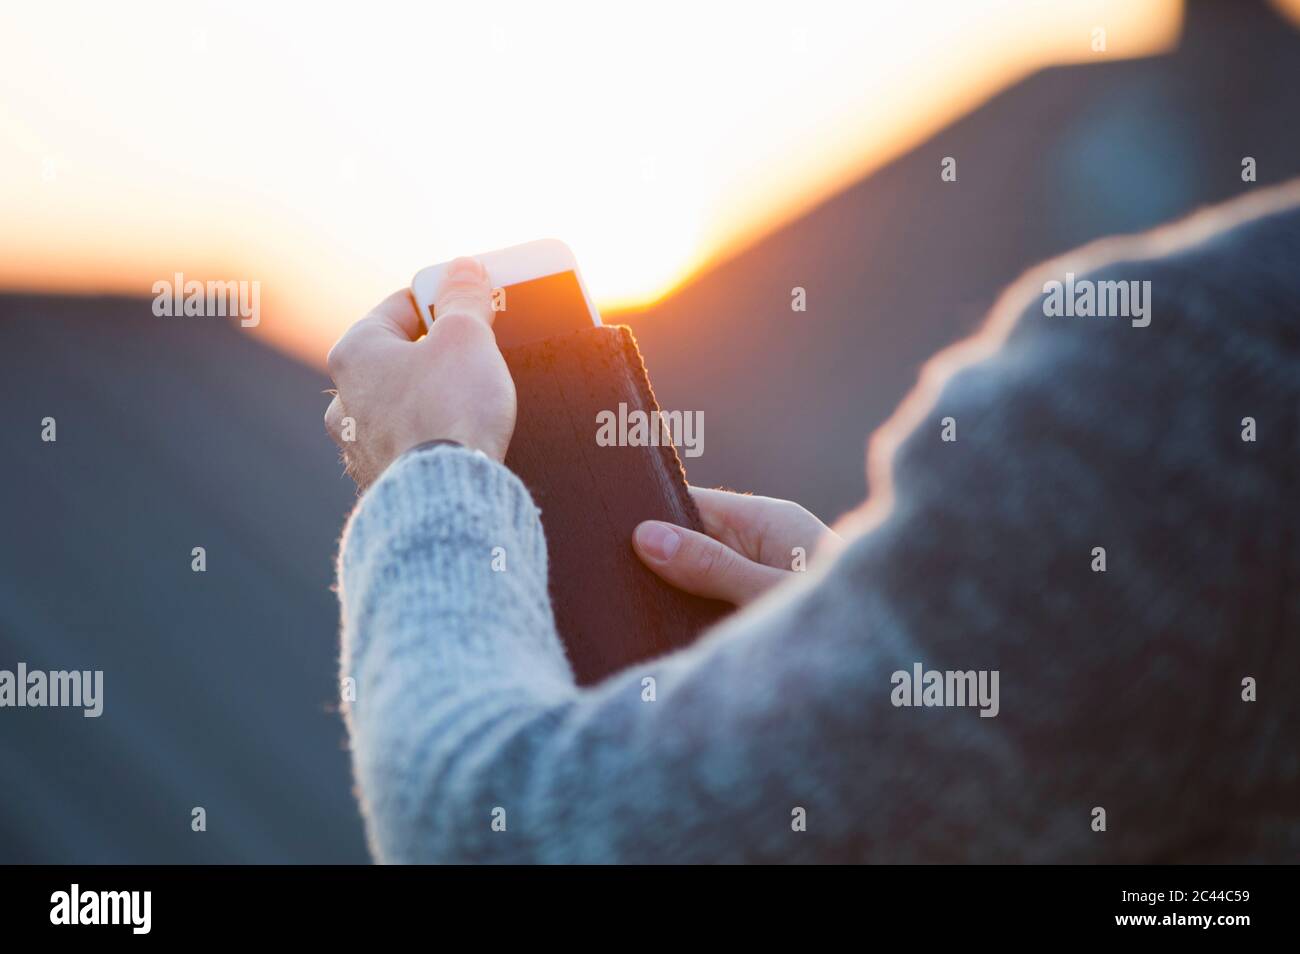 Imagen recortada de la mujer quitando el smartphone de la cubierta durante la puesta de sol Foto de stock